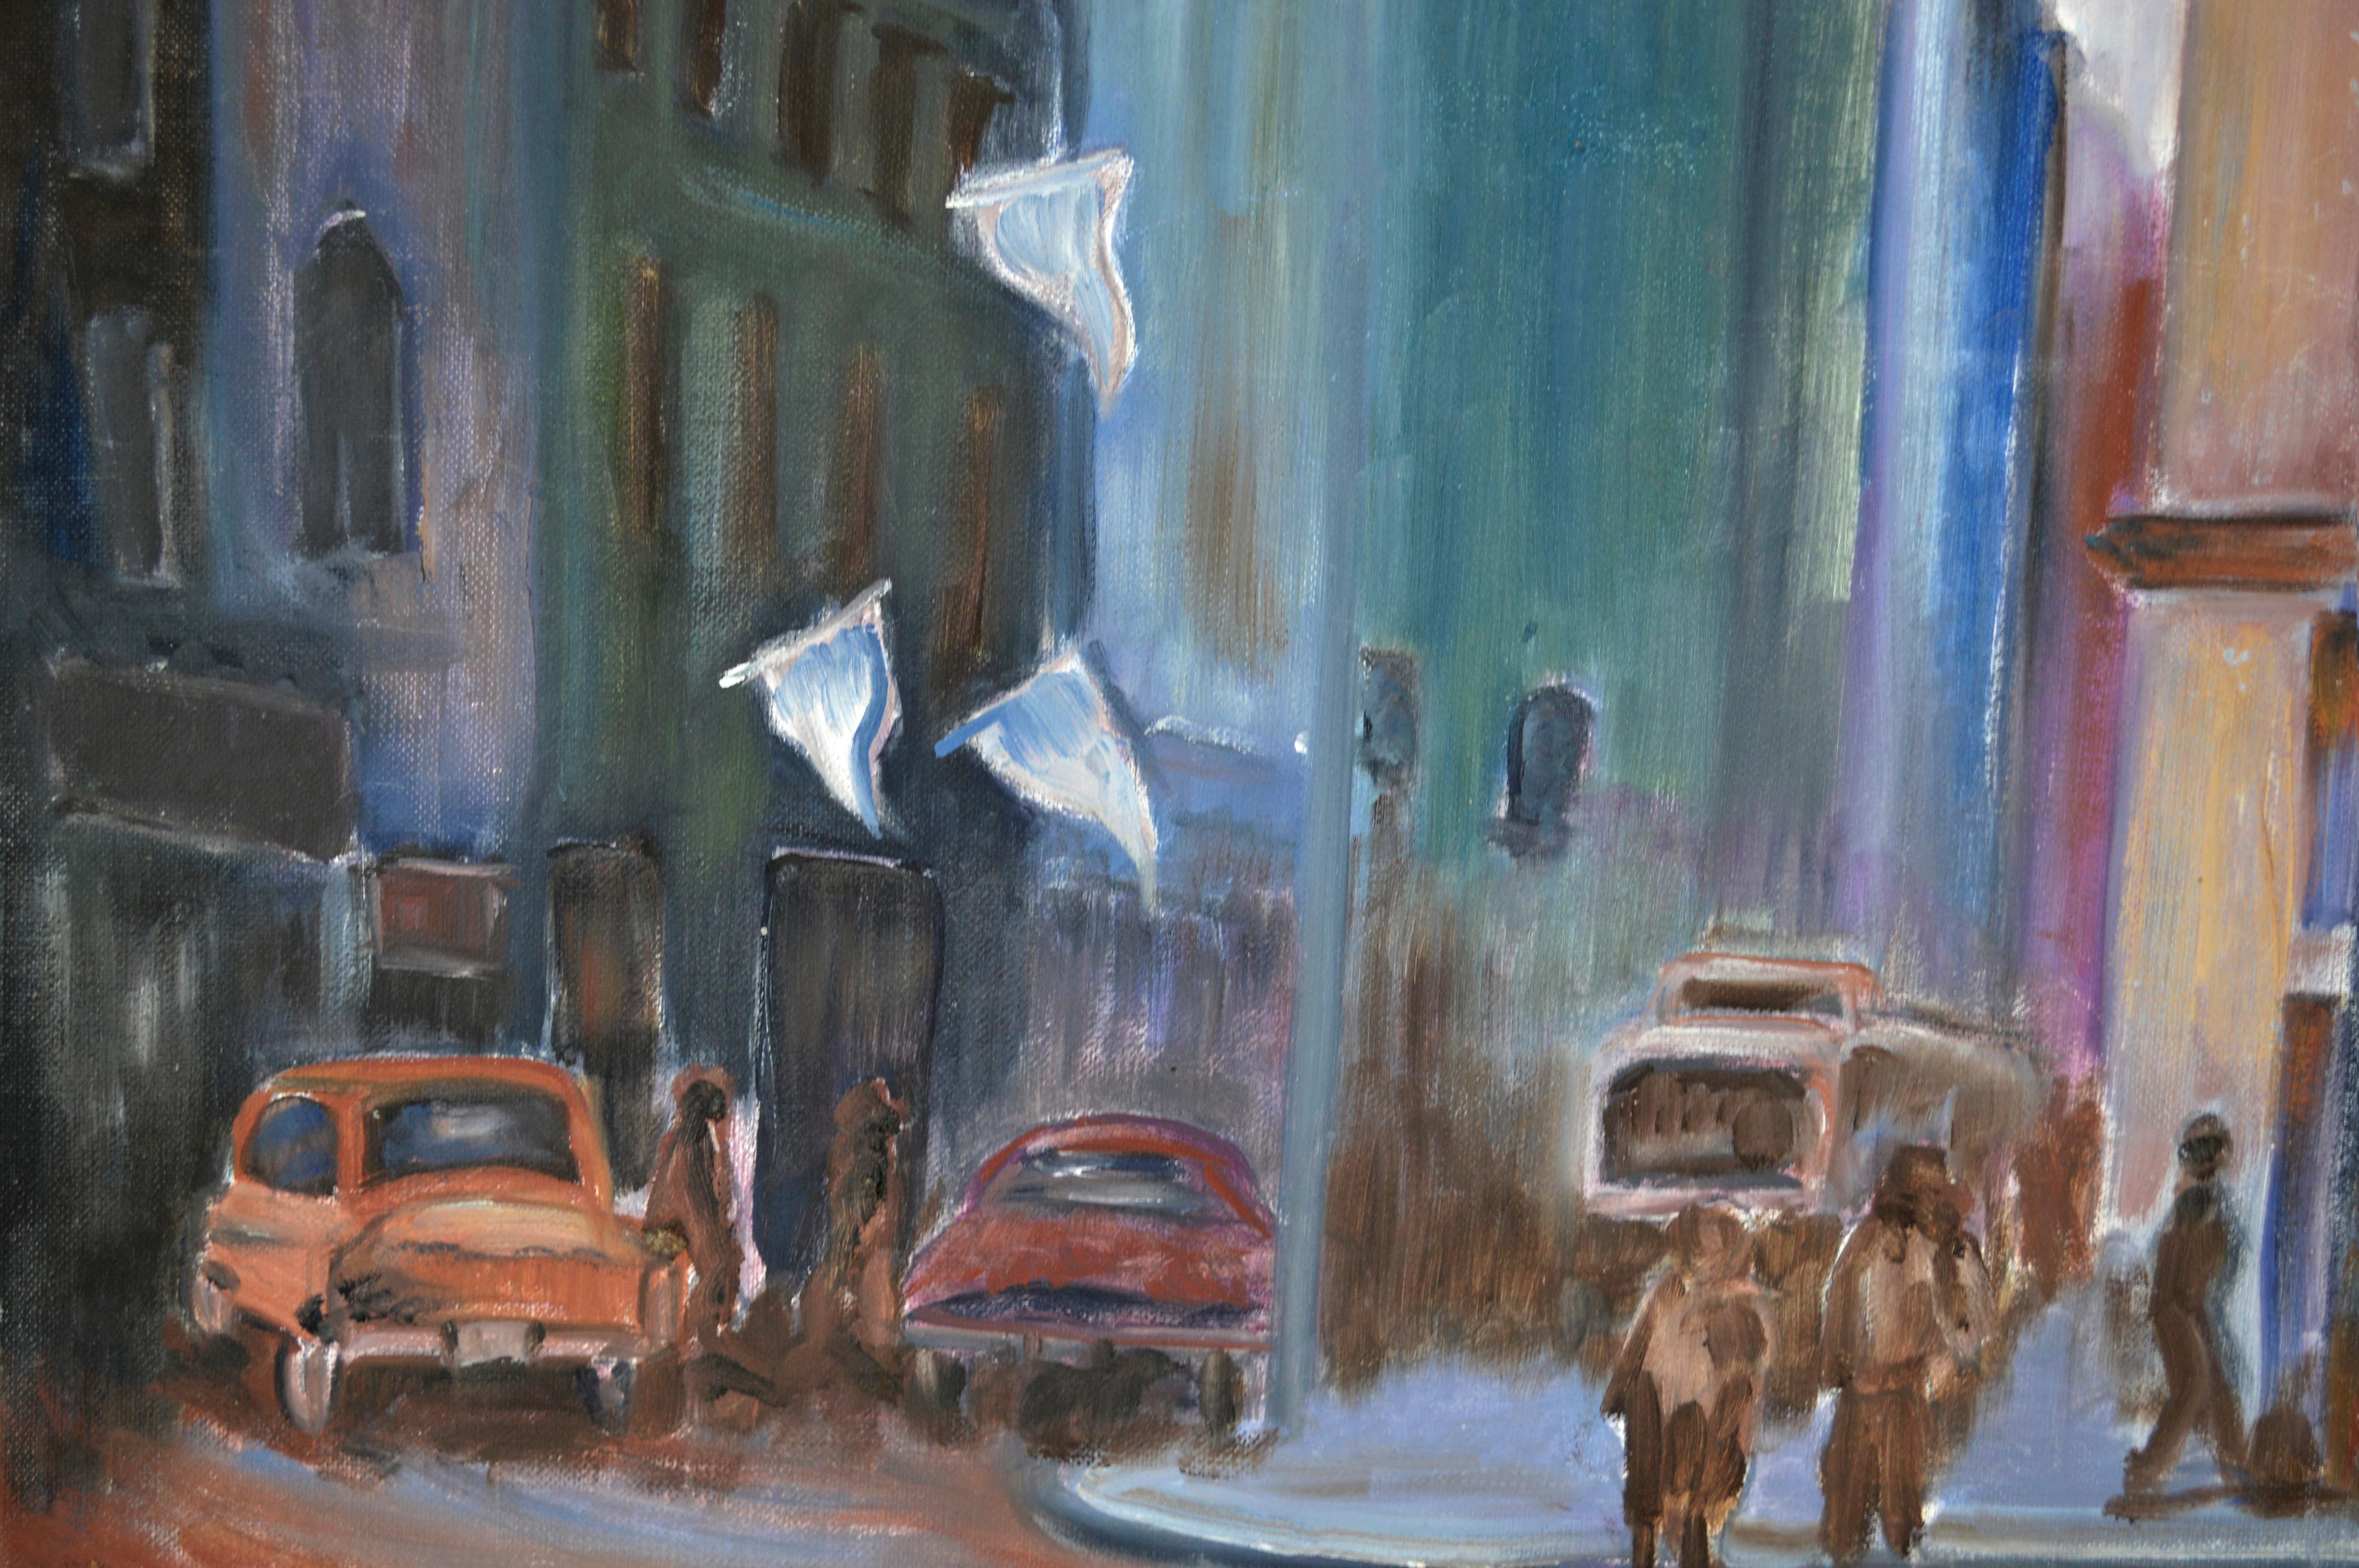 La vie nocturne dans la ville - Paysage urbain figuratif - Modernisme américain Painting par J Mirenda